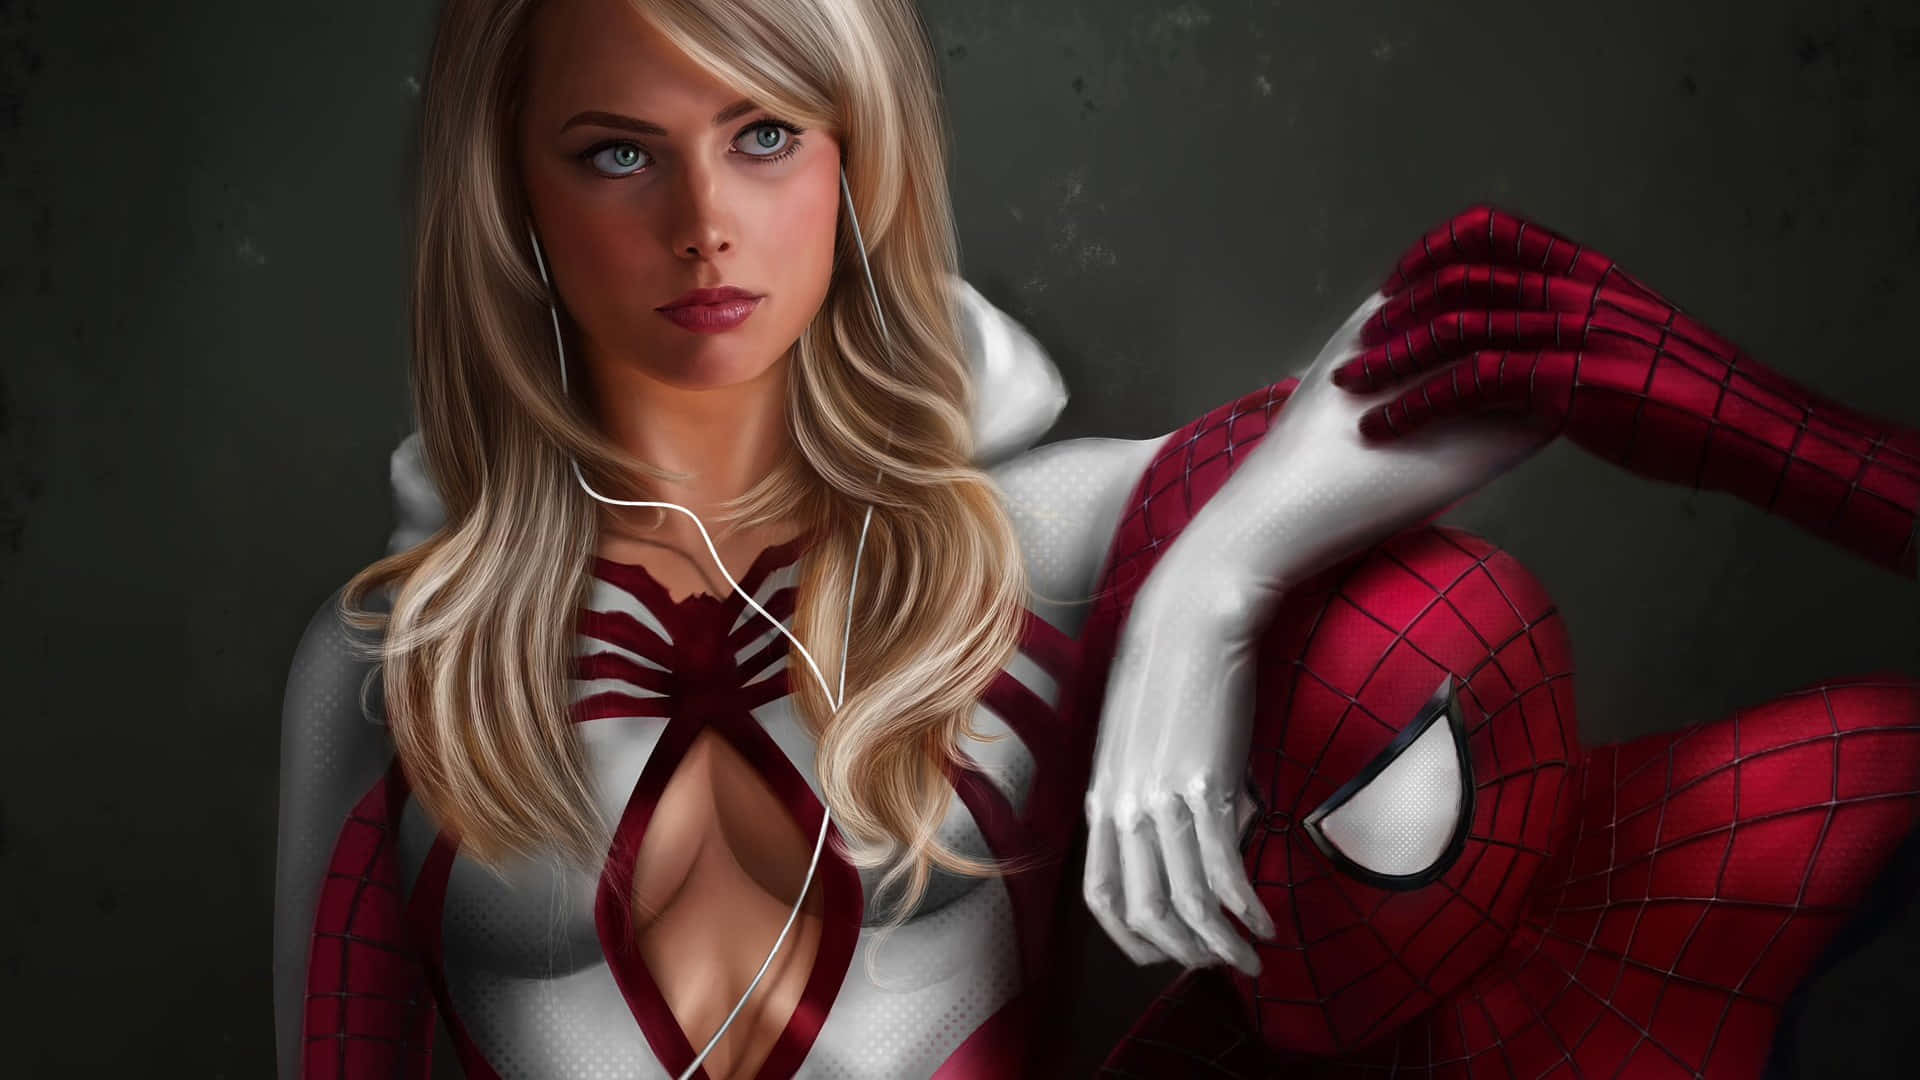 Unadonna Con Un Costume Di Spider-man Sta Posando Con Le Cuffie Alle Orecchie